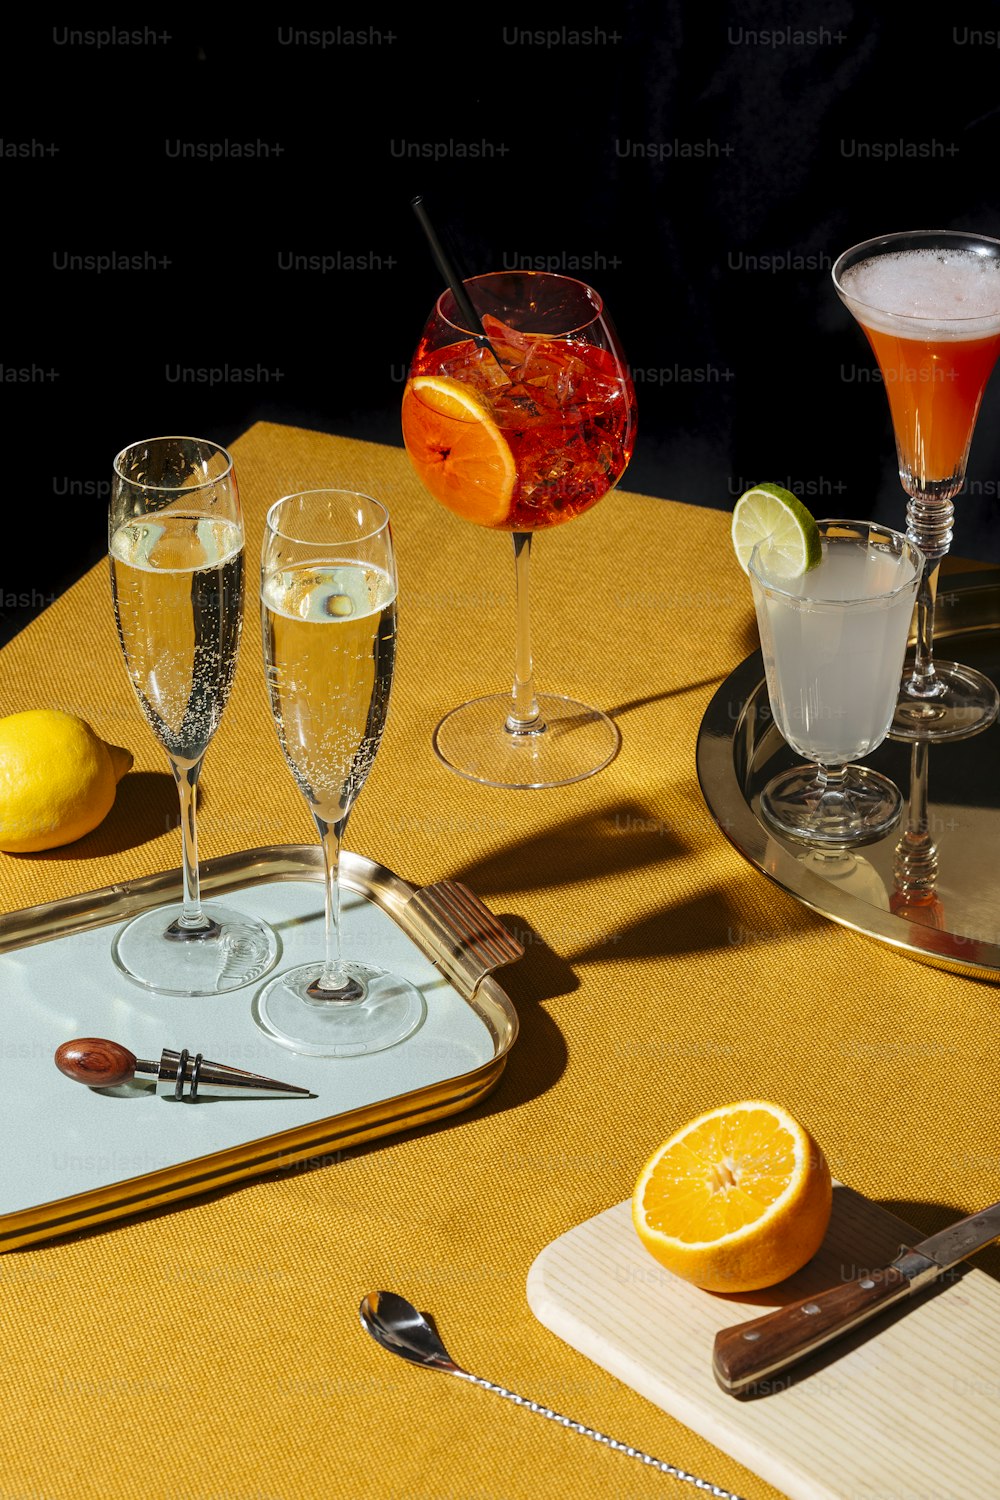 Prosecco-Gläser und Prosecco-Cocktails: Tintoretto, Spritz Veneziano und Lemon Sherbed. Pop zeitgenössischer Stil